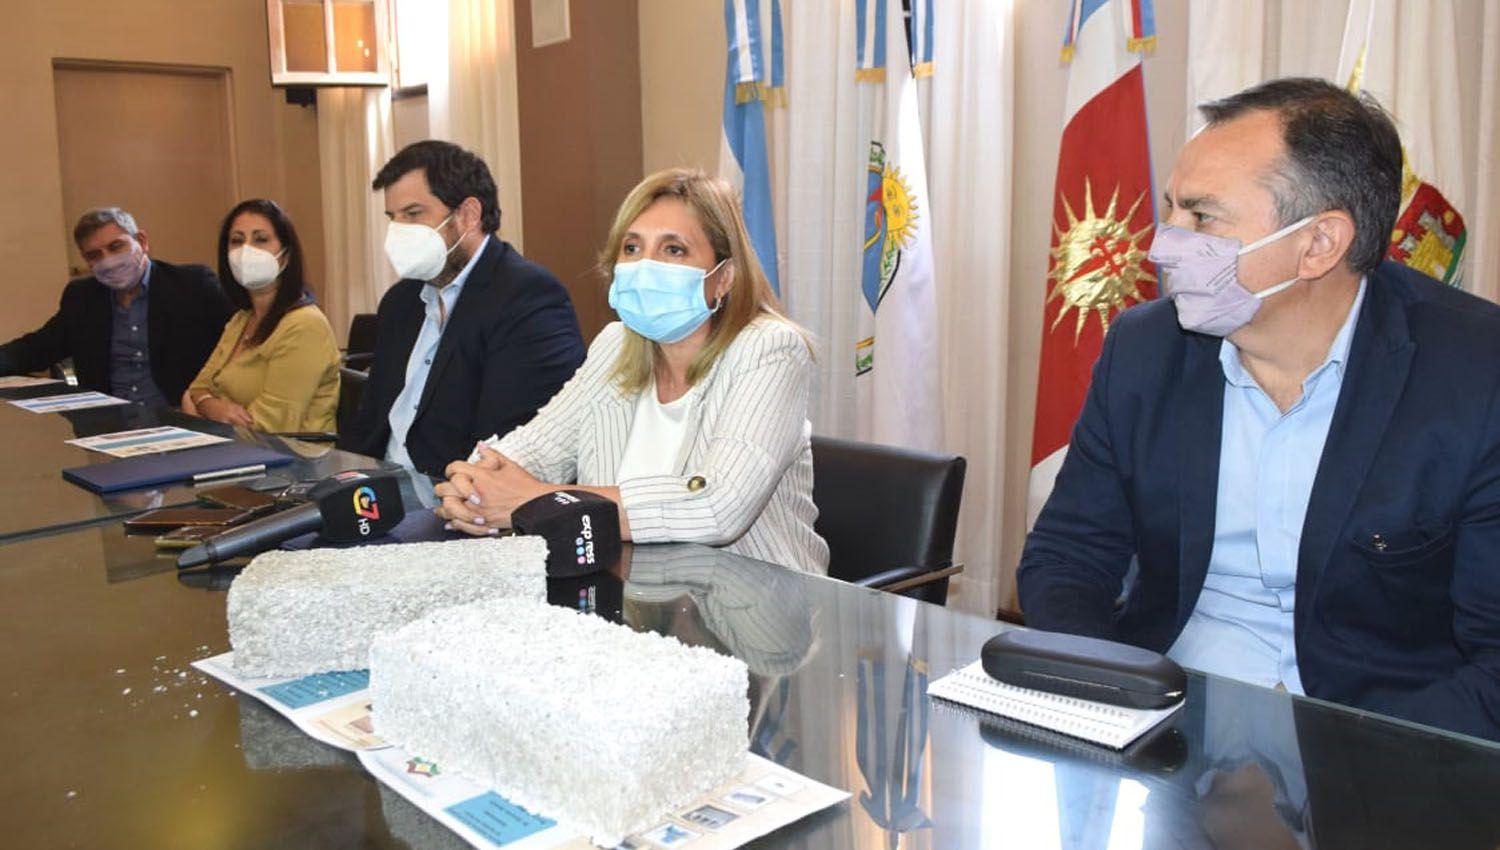 La intendente Fuentes y el presidente del IPVU firmaron convenio para poner en marcha el programa ambiental de Eco Ladrillos